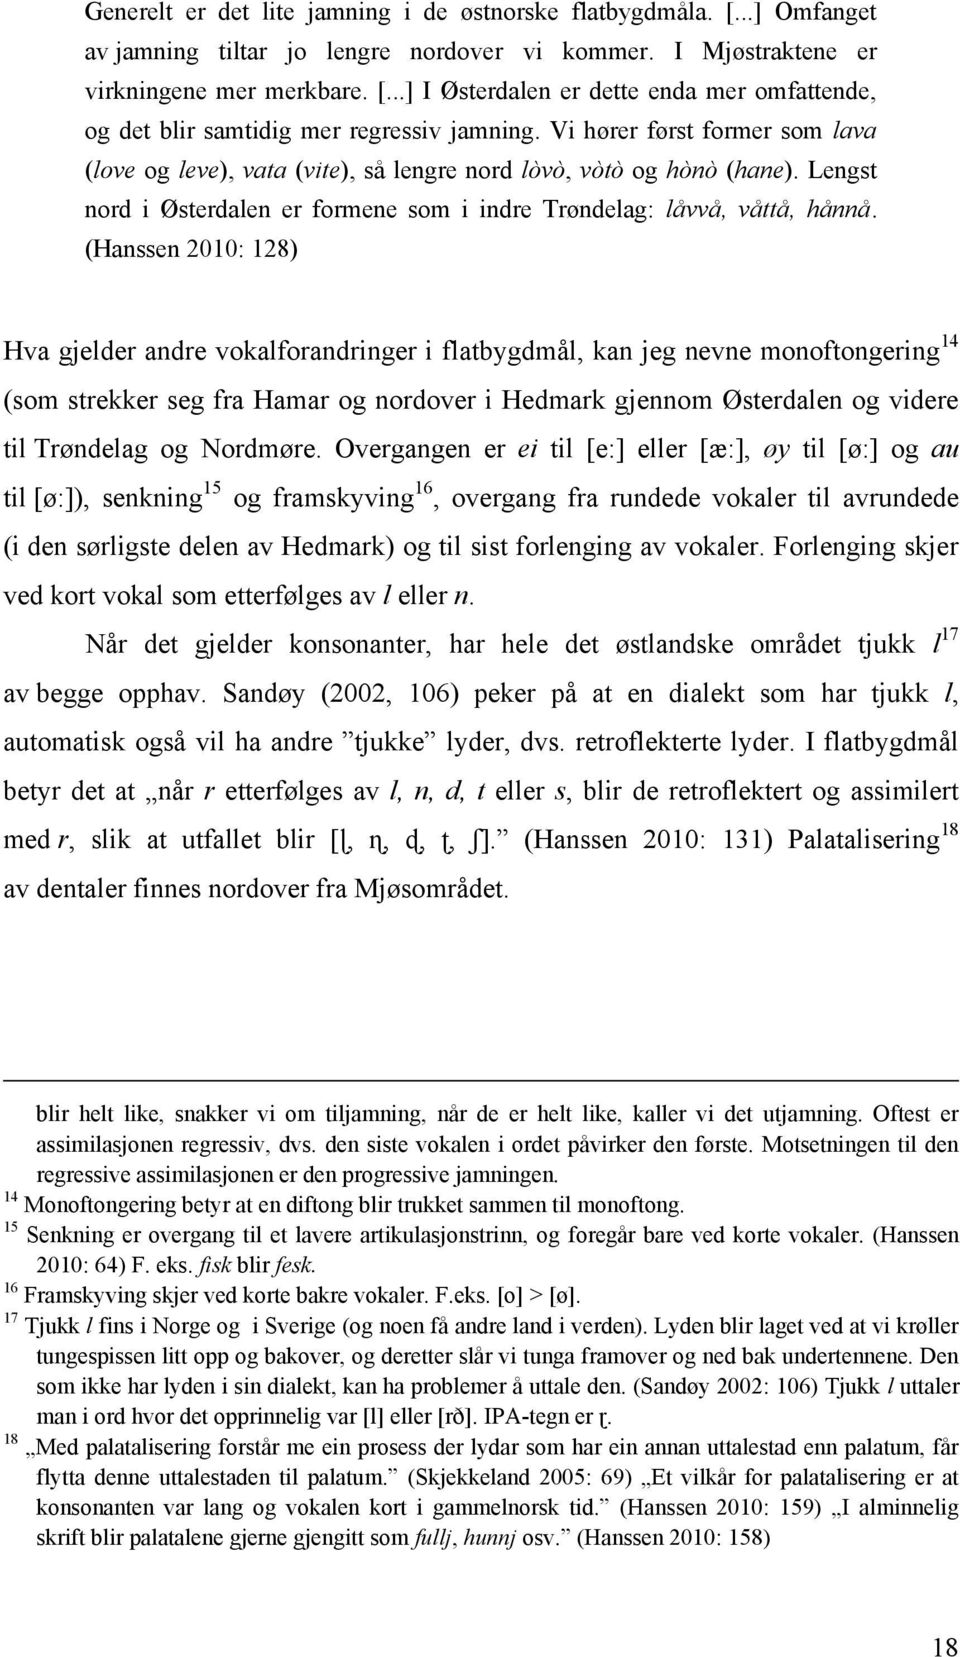 (Hanssen 2010: 128) Hva gjelder andre vokalforandringer i flatbygdmål, kan jeg nevne monoftongering 14 (som strekker seg fra Hamar og nordover i Hedmark gjennom Østerdalen og videre til Trøndelag og